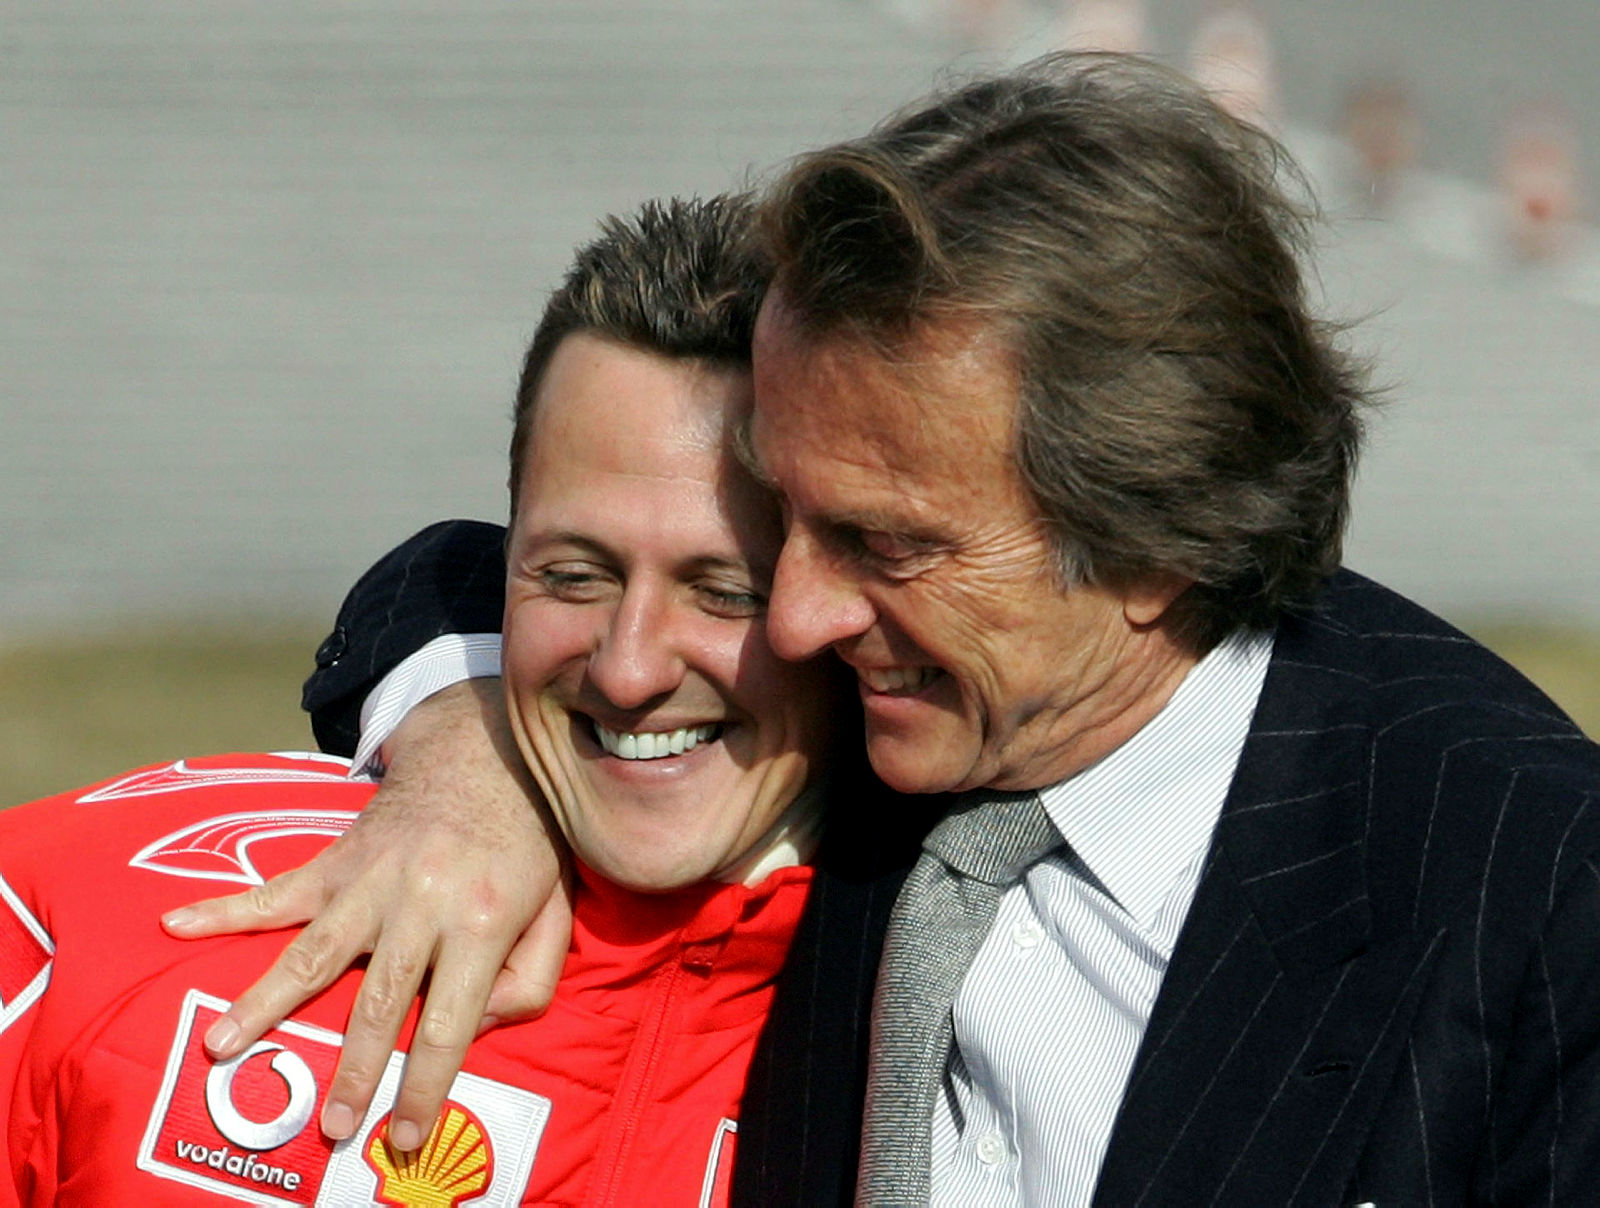 F1 pilotu Michael Schumacher hakkında yeni gelişme! Michael Schumacher’in sağlık durumu nasıl?